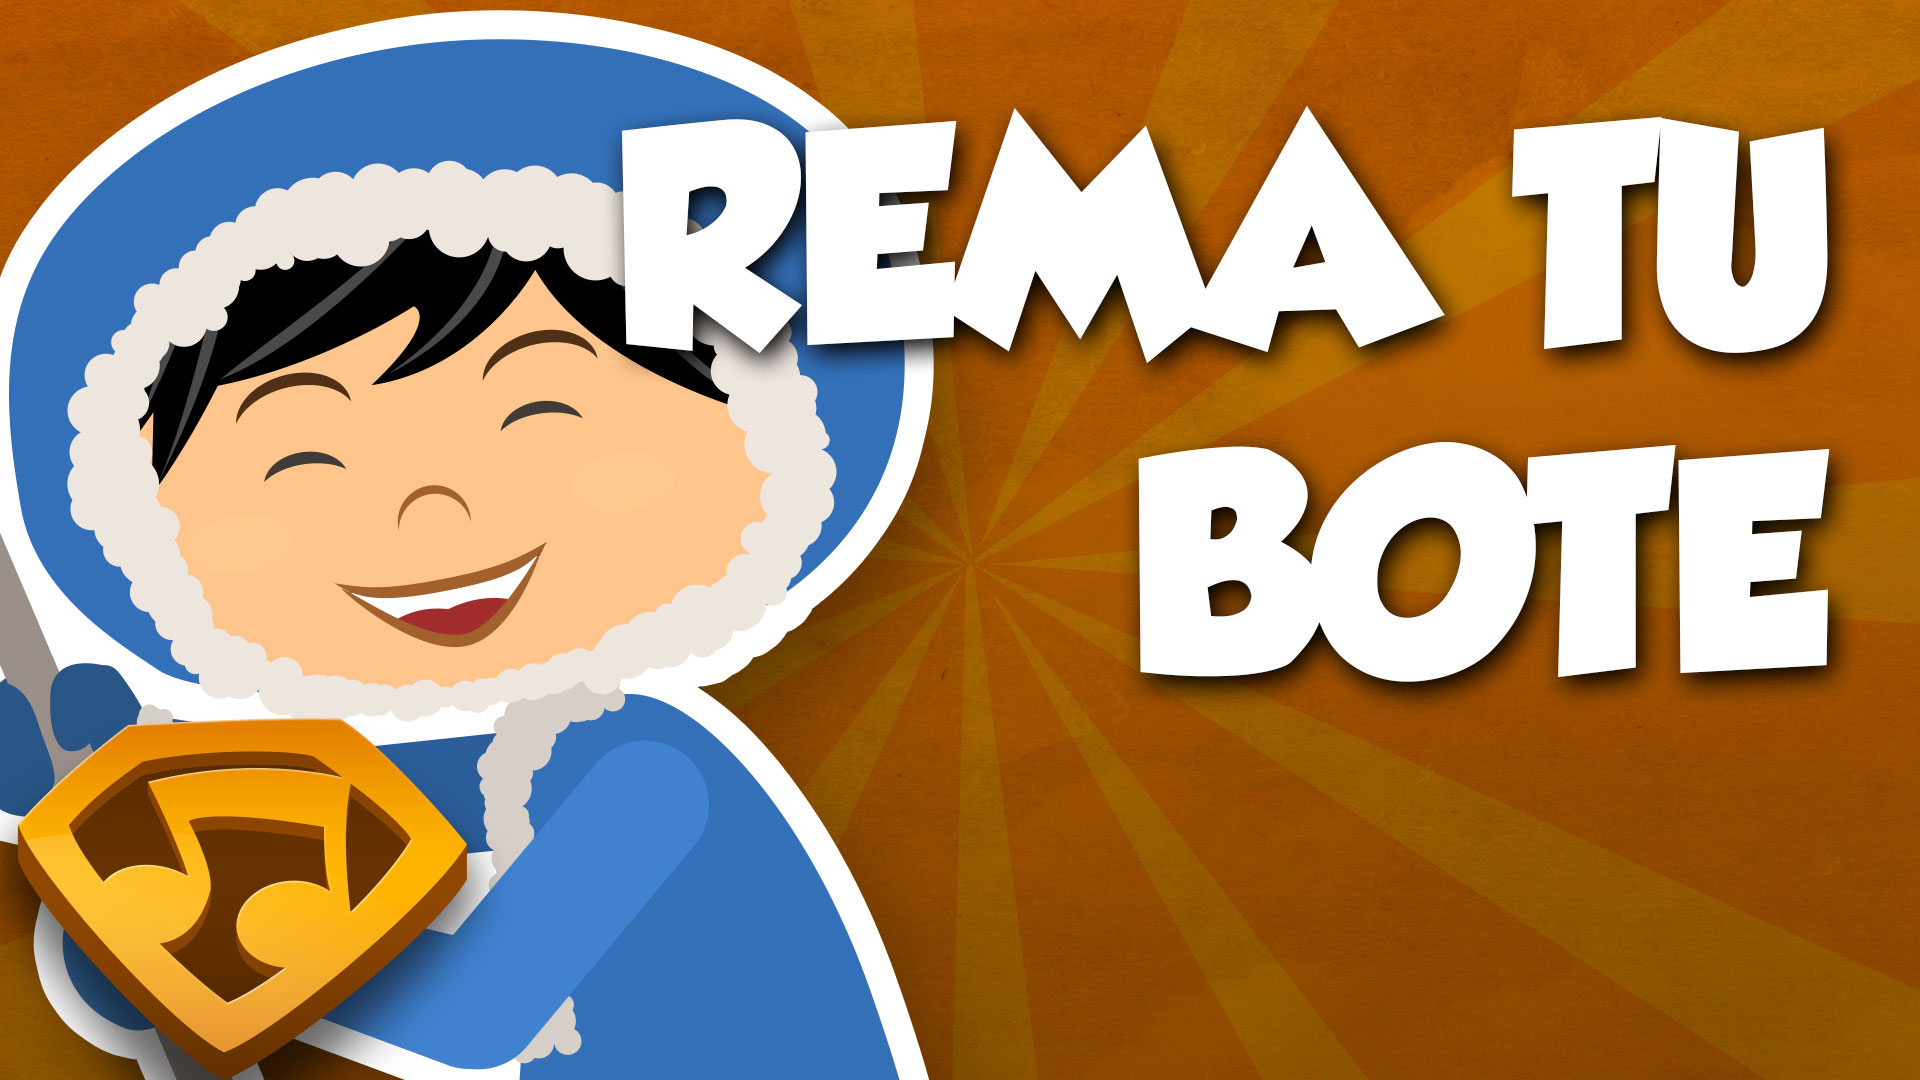 Rema, Rema, Rema Tu Bote (Versión Con Letras) video thumbnail. Click to watch the video.